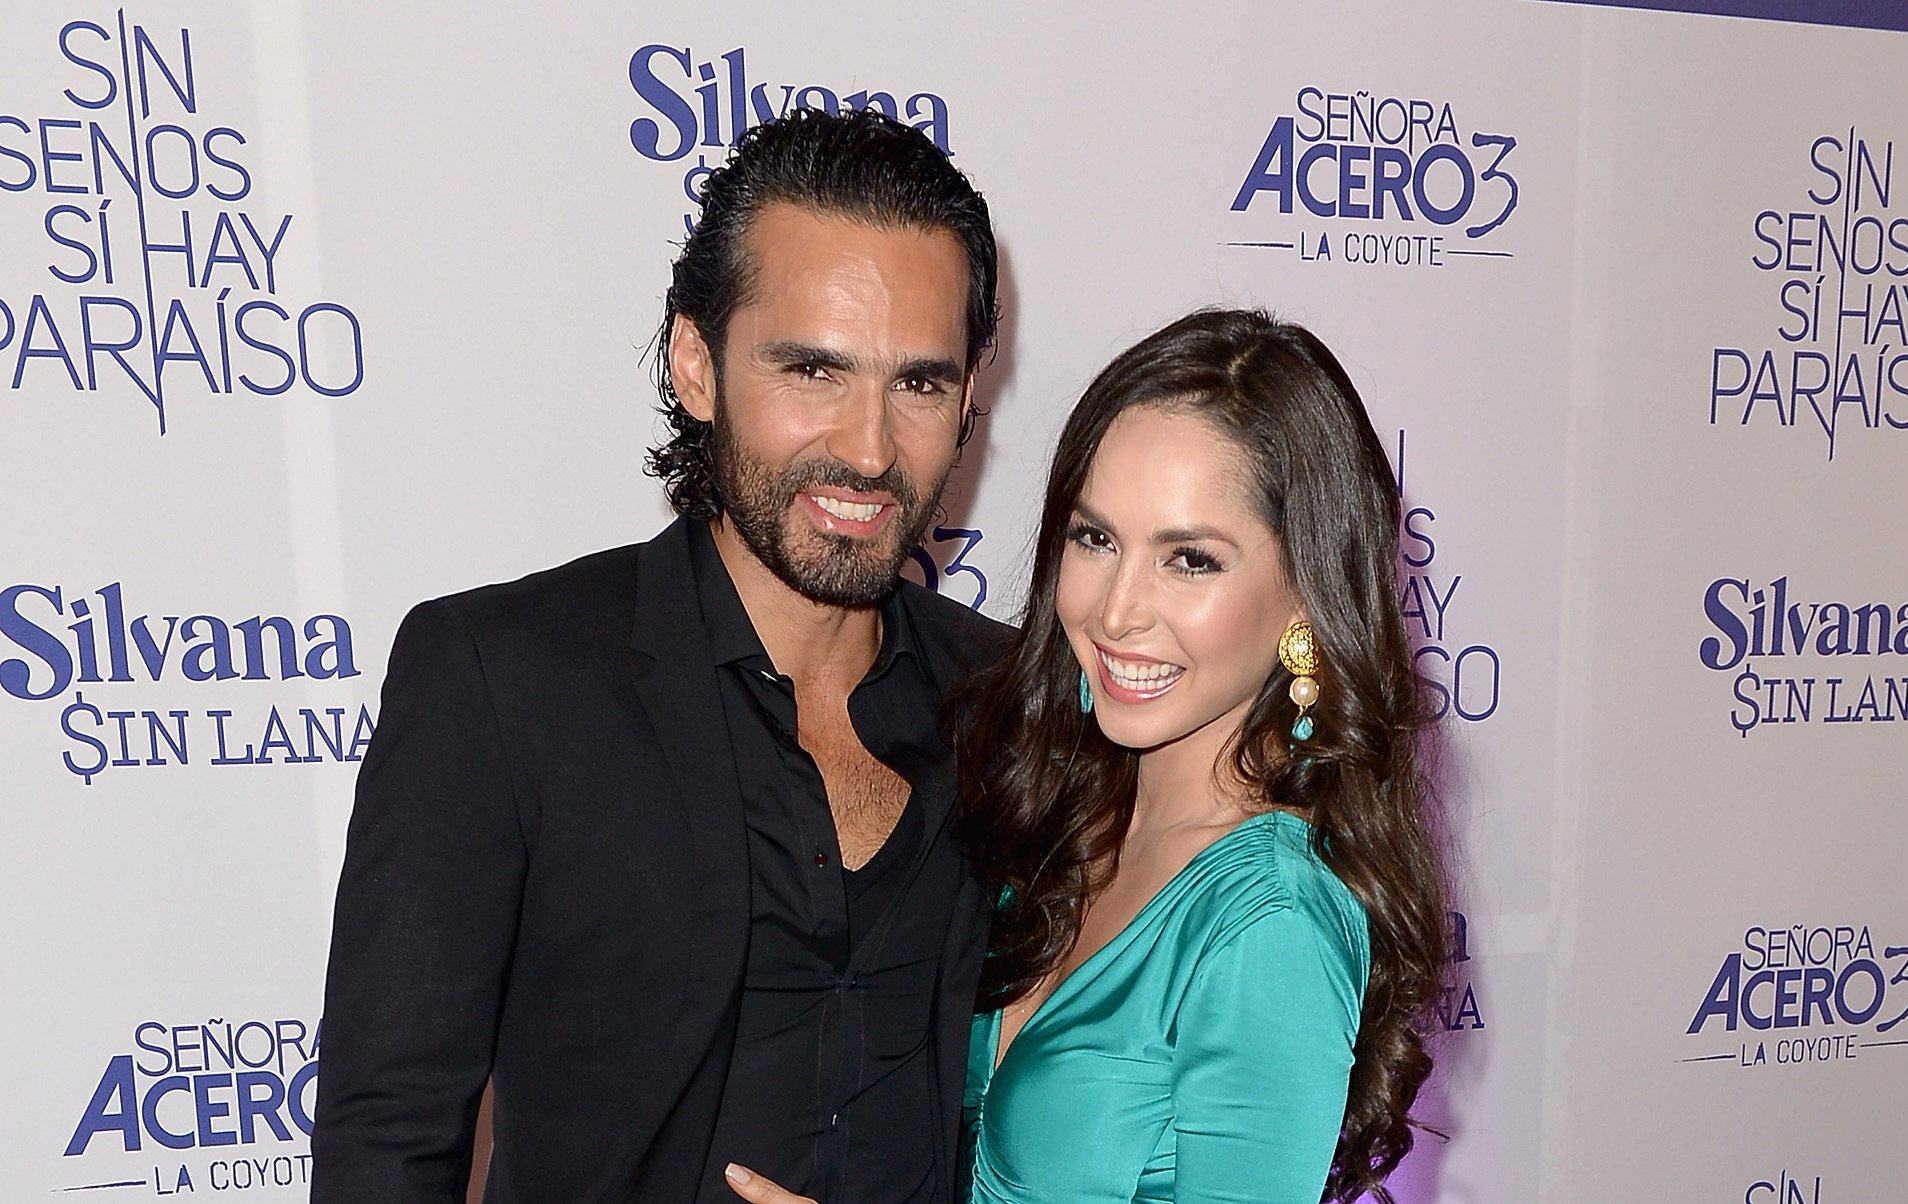 Fabián Ríos y Carmen Villalobos asisten al estreno de "Silvana Sin Lana", "Sin Senos Sí Hay Paraíso" y "Señora Acero 3" en el hotel Conrad en julio de 2016, en Miami || Fuente: Getty Images